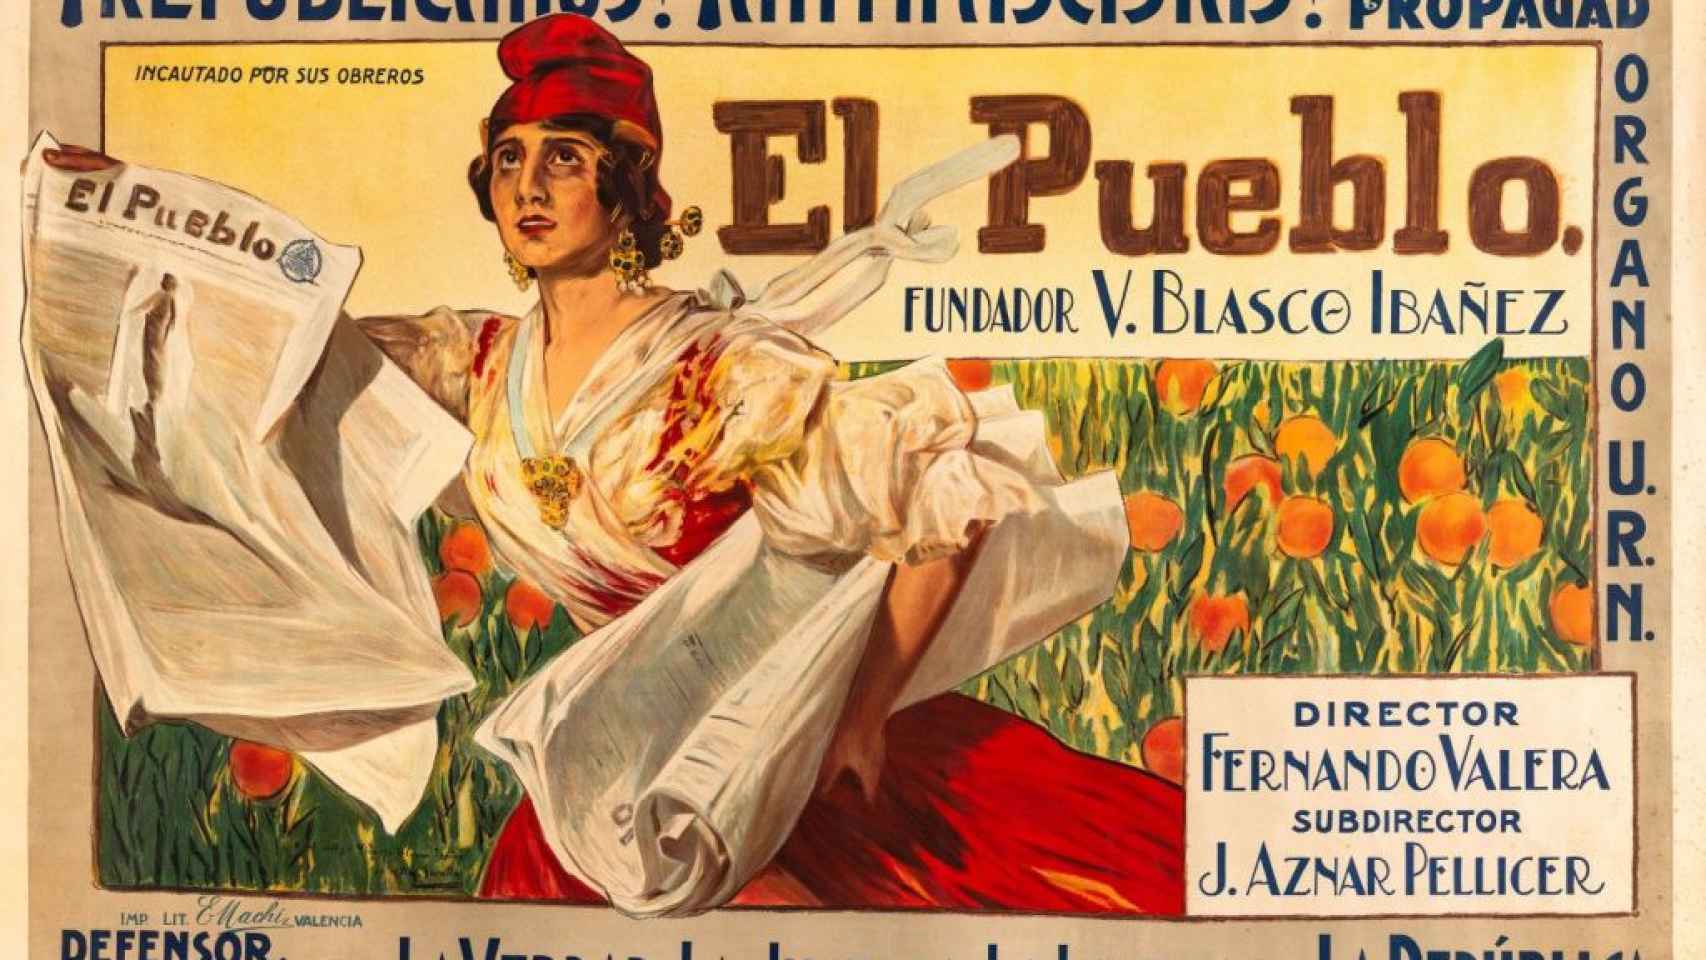 Versión del boceto de Joaquín Sorolla para el diario ‘El Pueblo’, con el añadido del lema “¡Republicanos! ¡Antifascistas!” (1937).